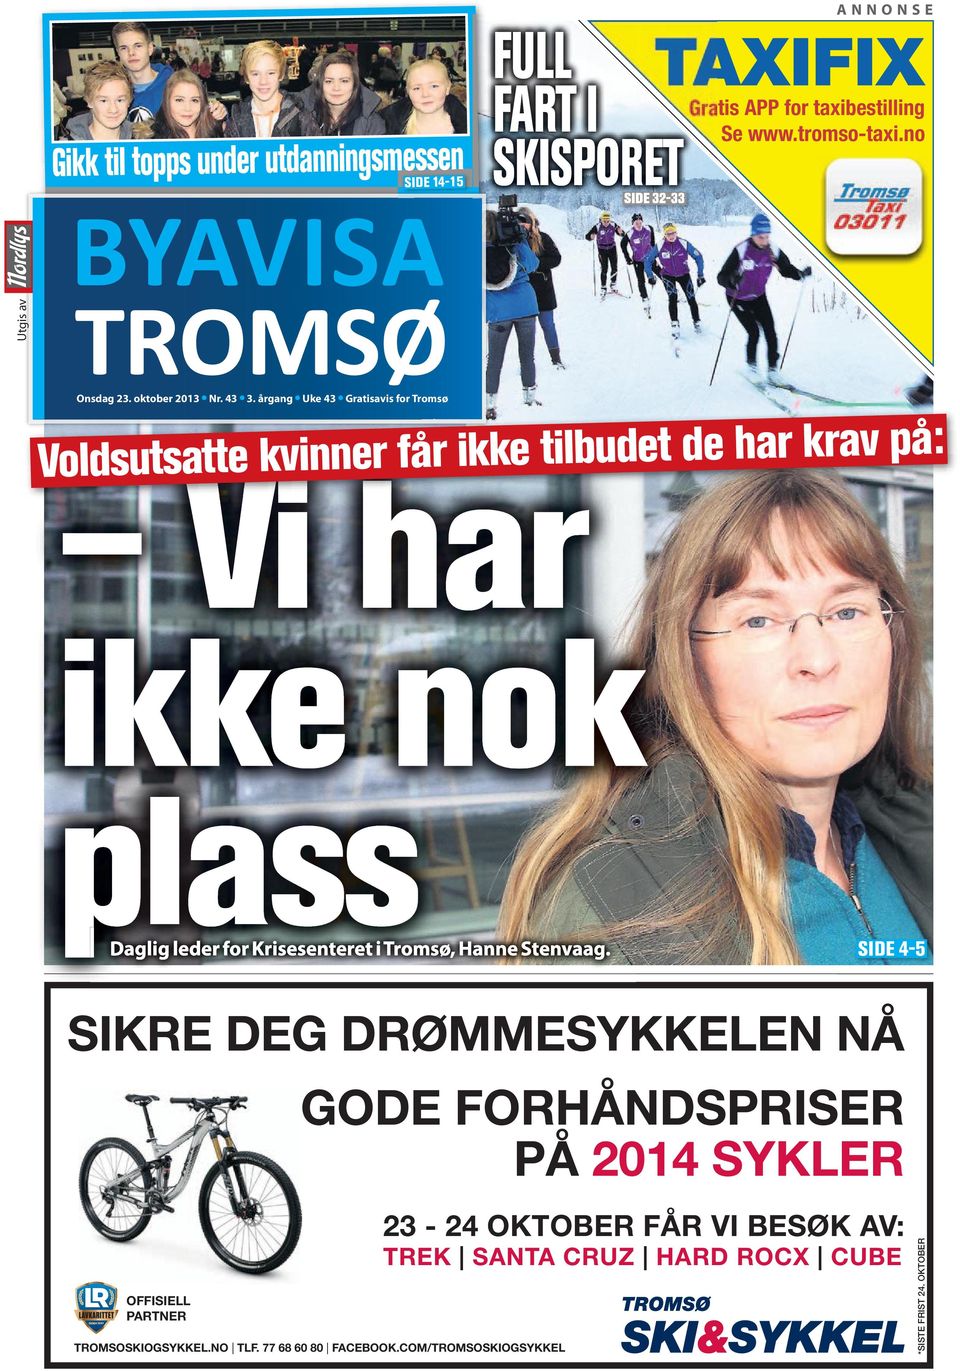 årgang Uke 43 Gratisavis for Tromsø Voldsutsatte kvinner får ikke tilbudet de